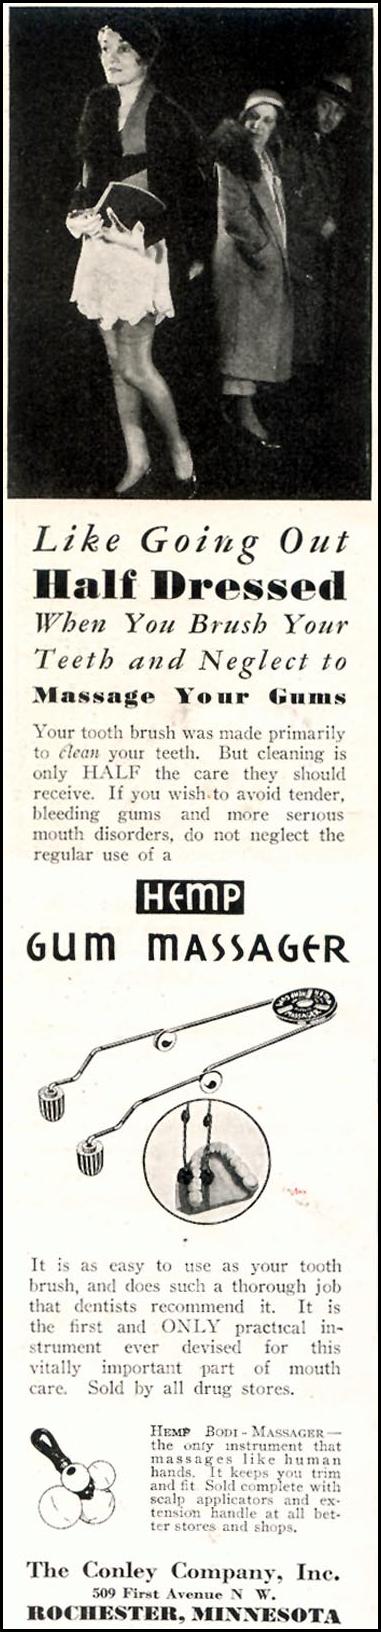 HEMP GUM MASSAGER
GOOD HOUSEKEEPING
11/01/1933
p. 194